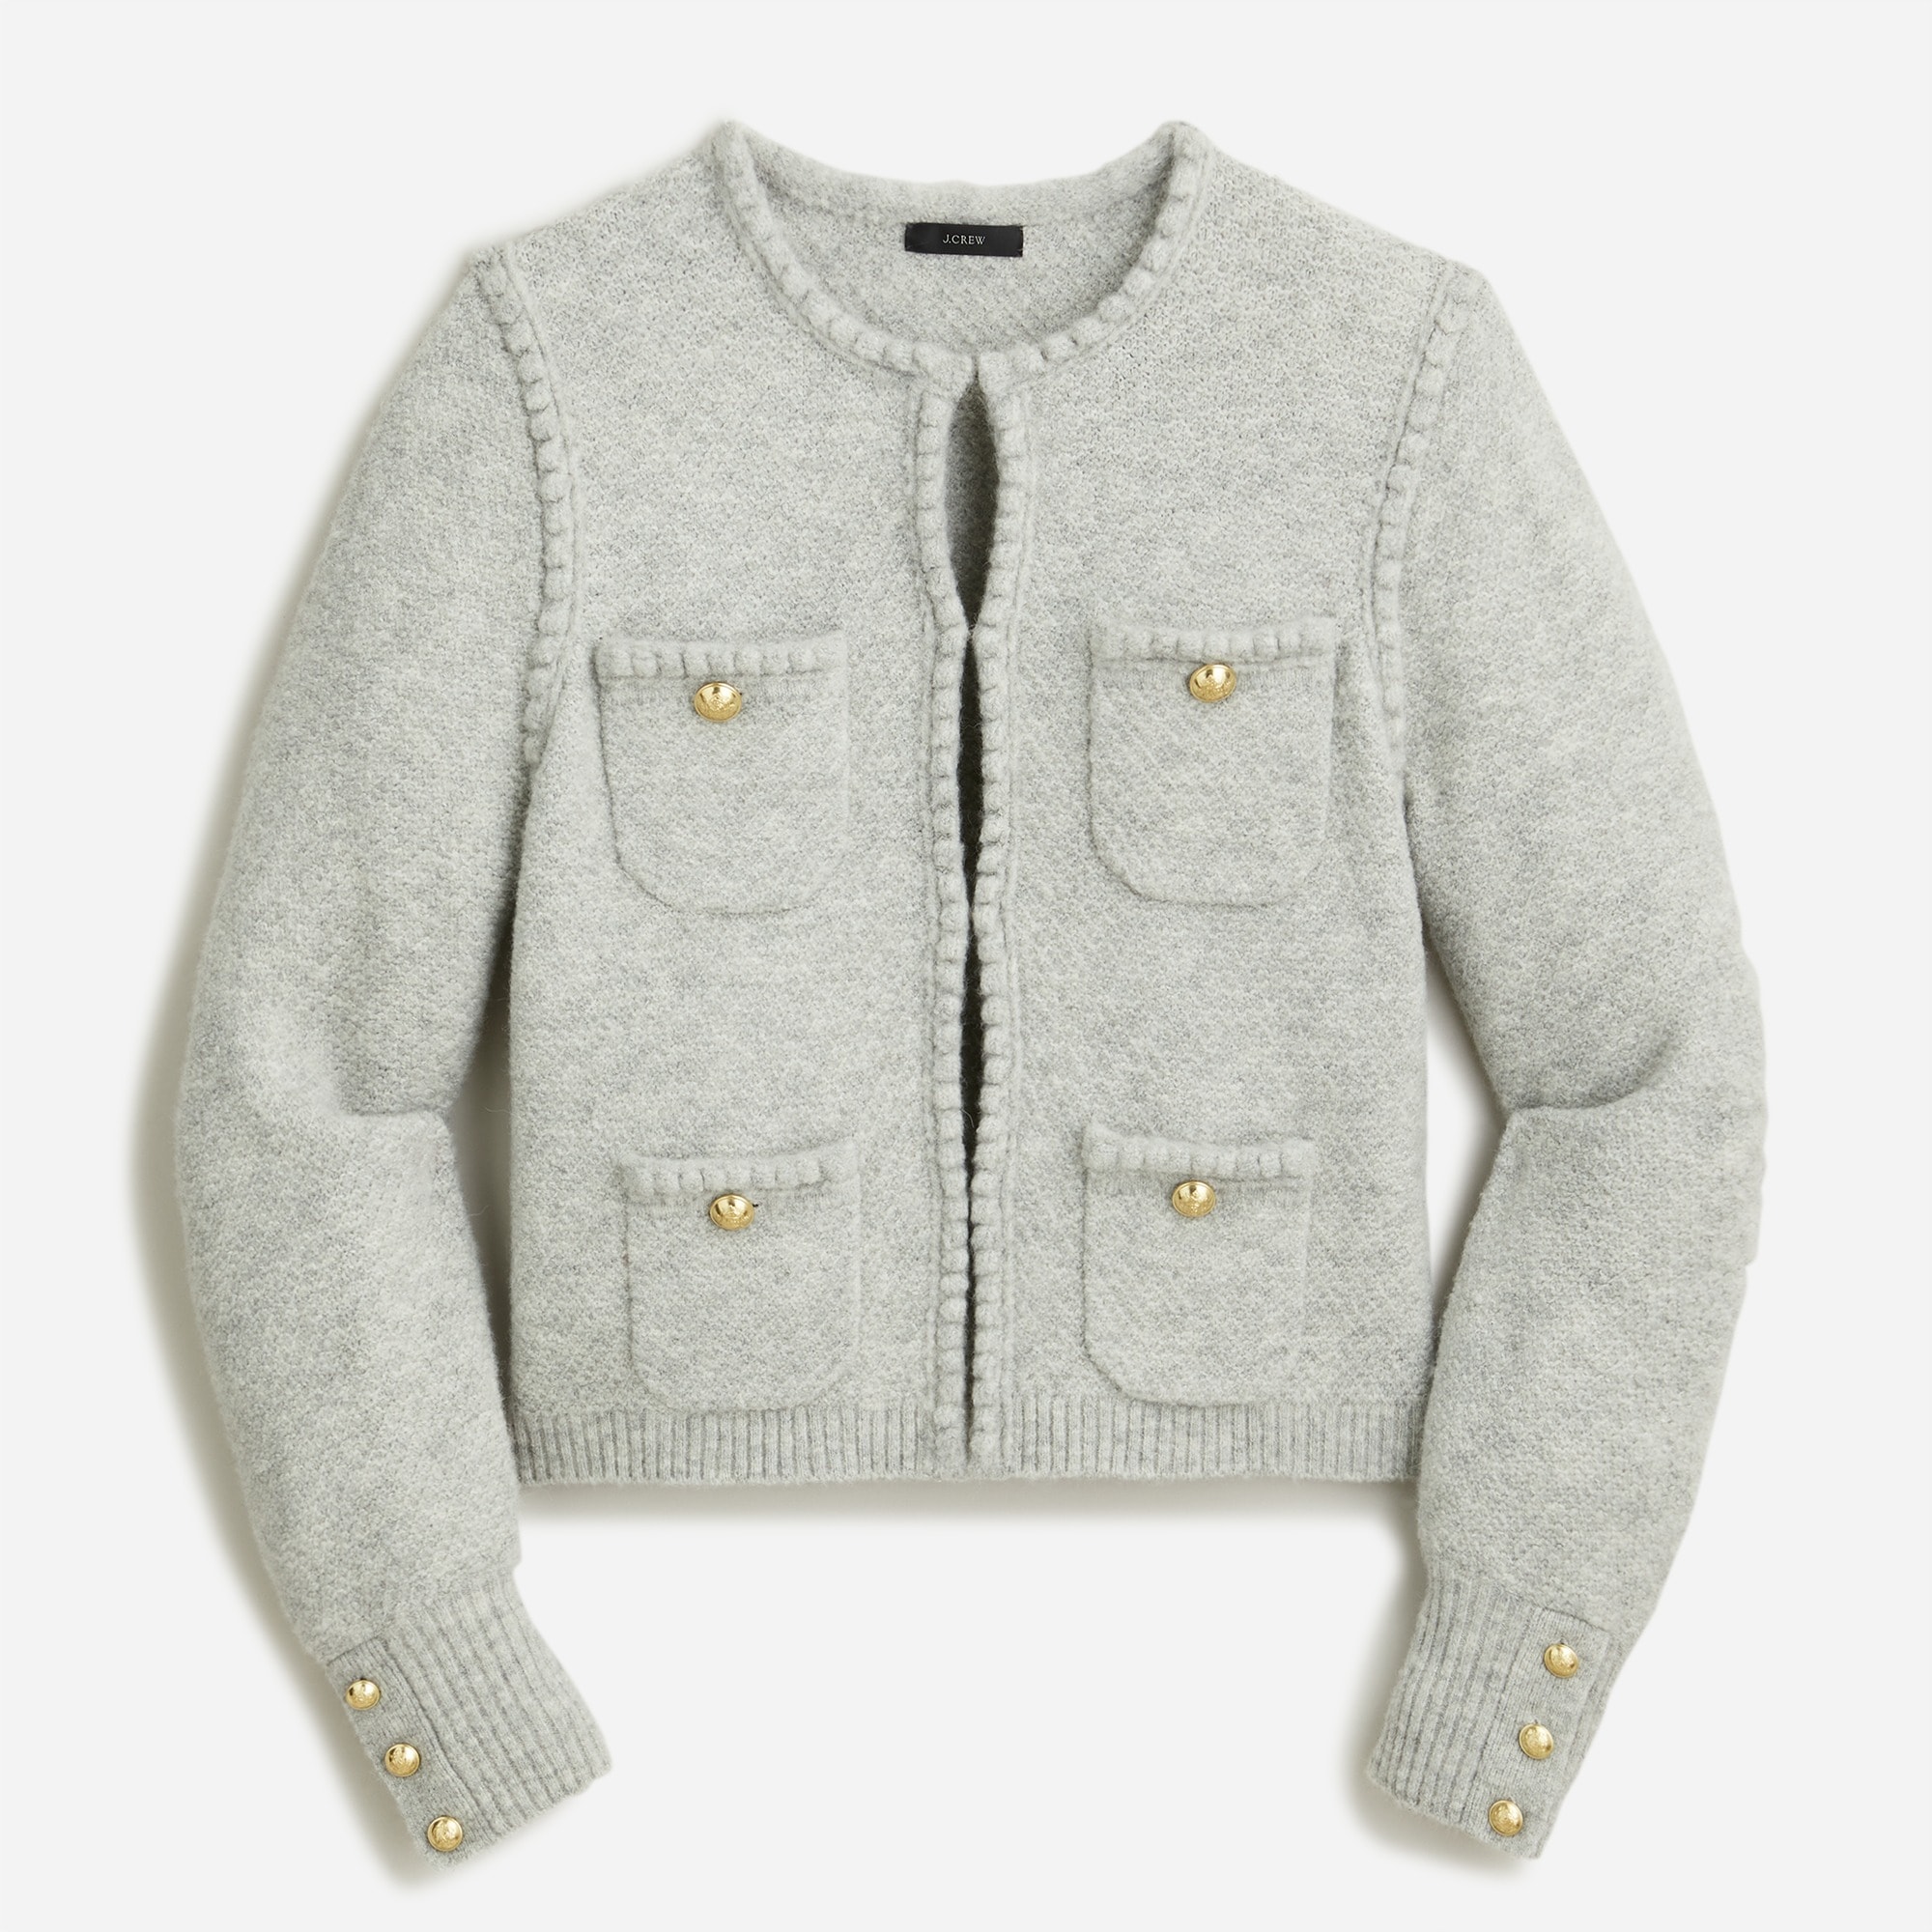 J.Crew: Odette Sweater Lady Jacket For Women